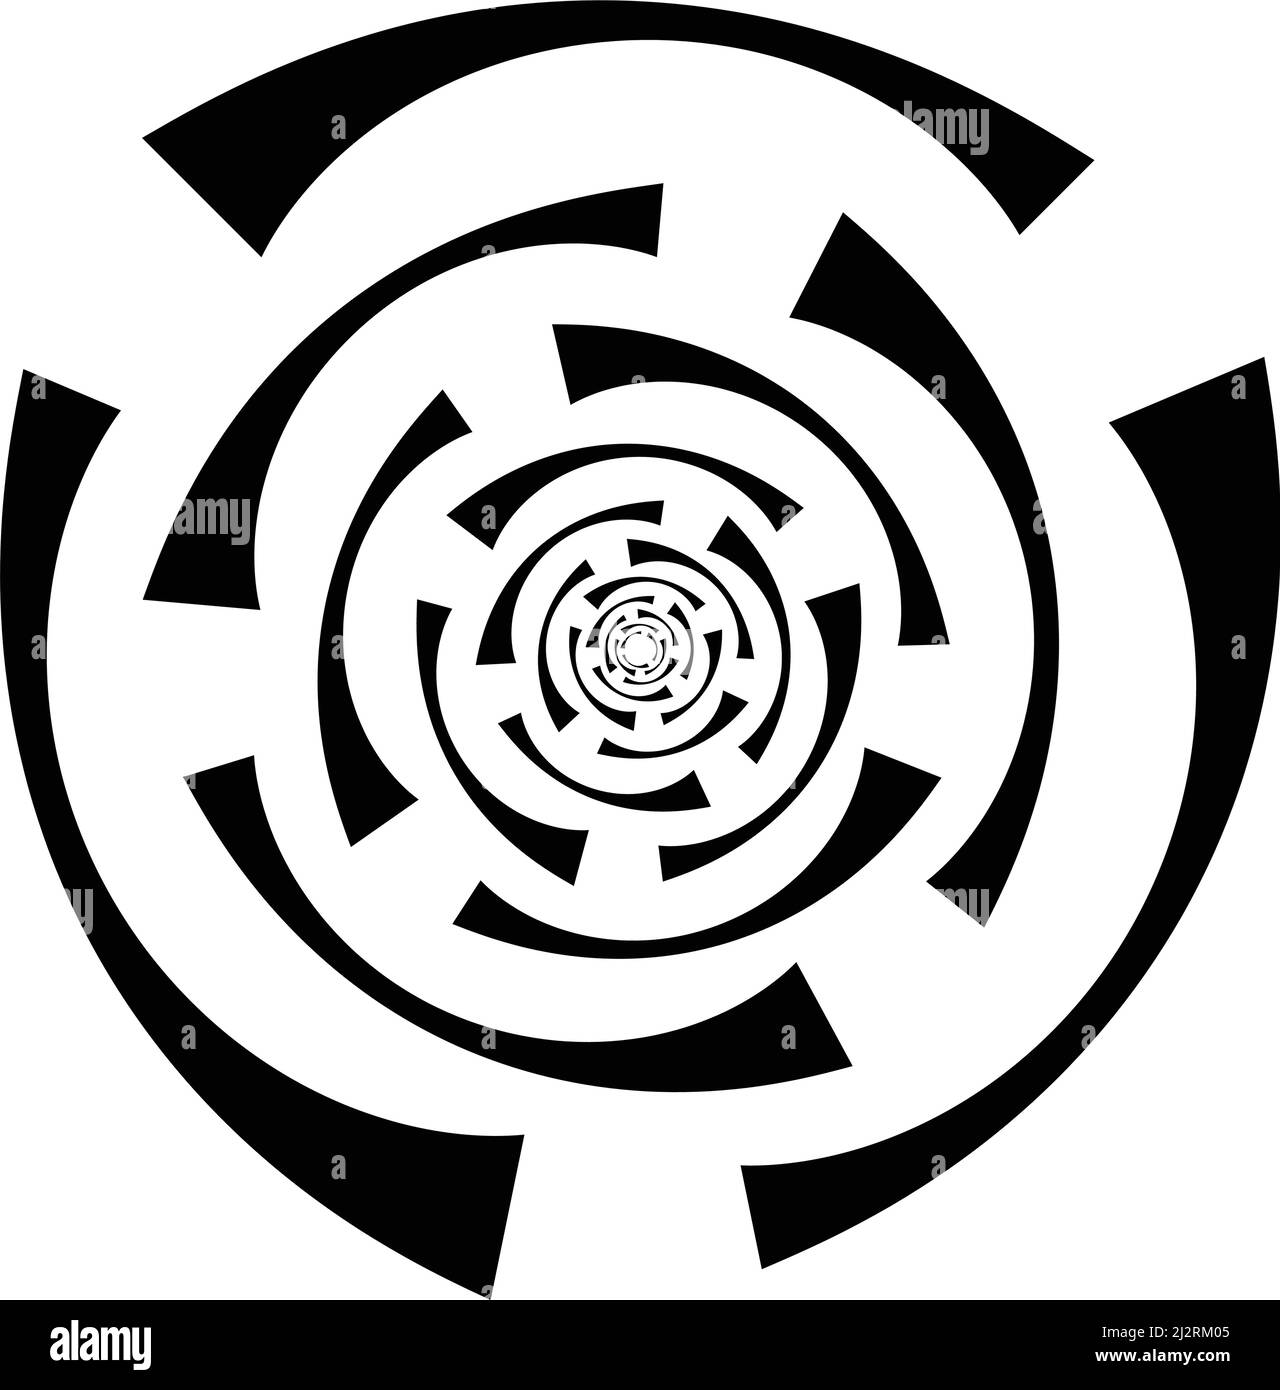 Icône de lignes concentriques, radiales, cercles. Forme de cercle segmentée. Élément de conception spirale, tourbillons, tourbillons et torsades - illustration vectorielle, clip-art gr Illustration de Vecteur